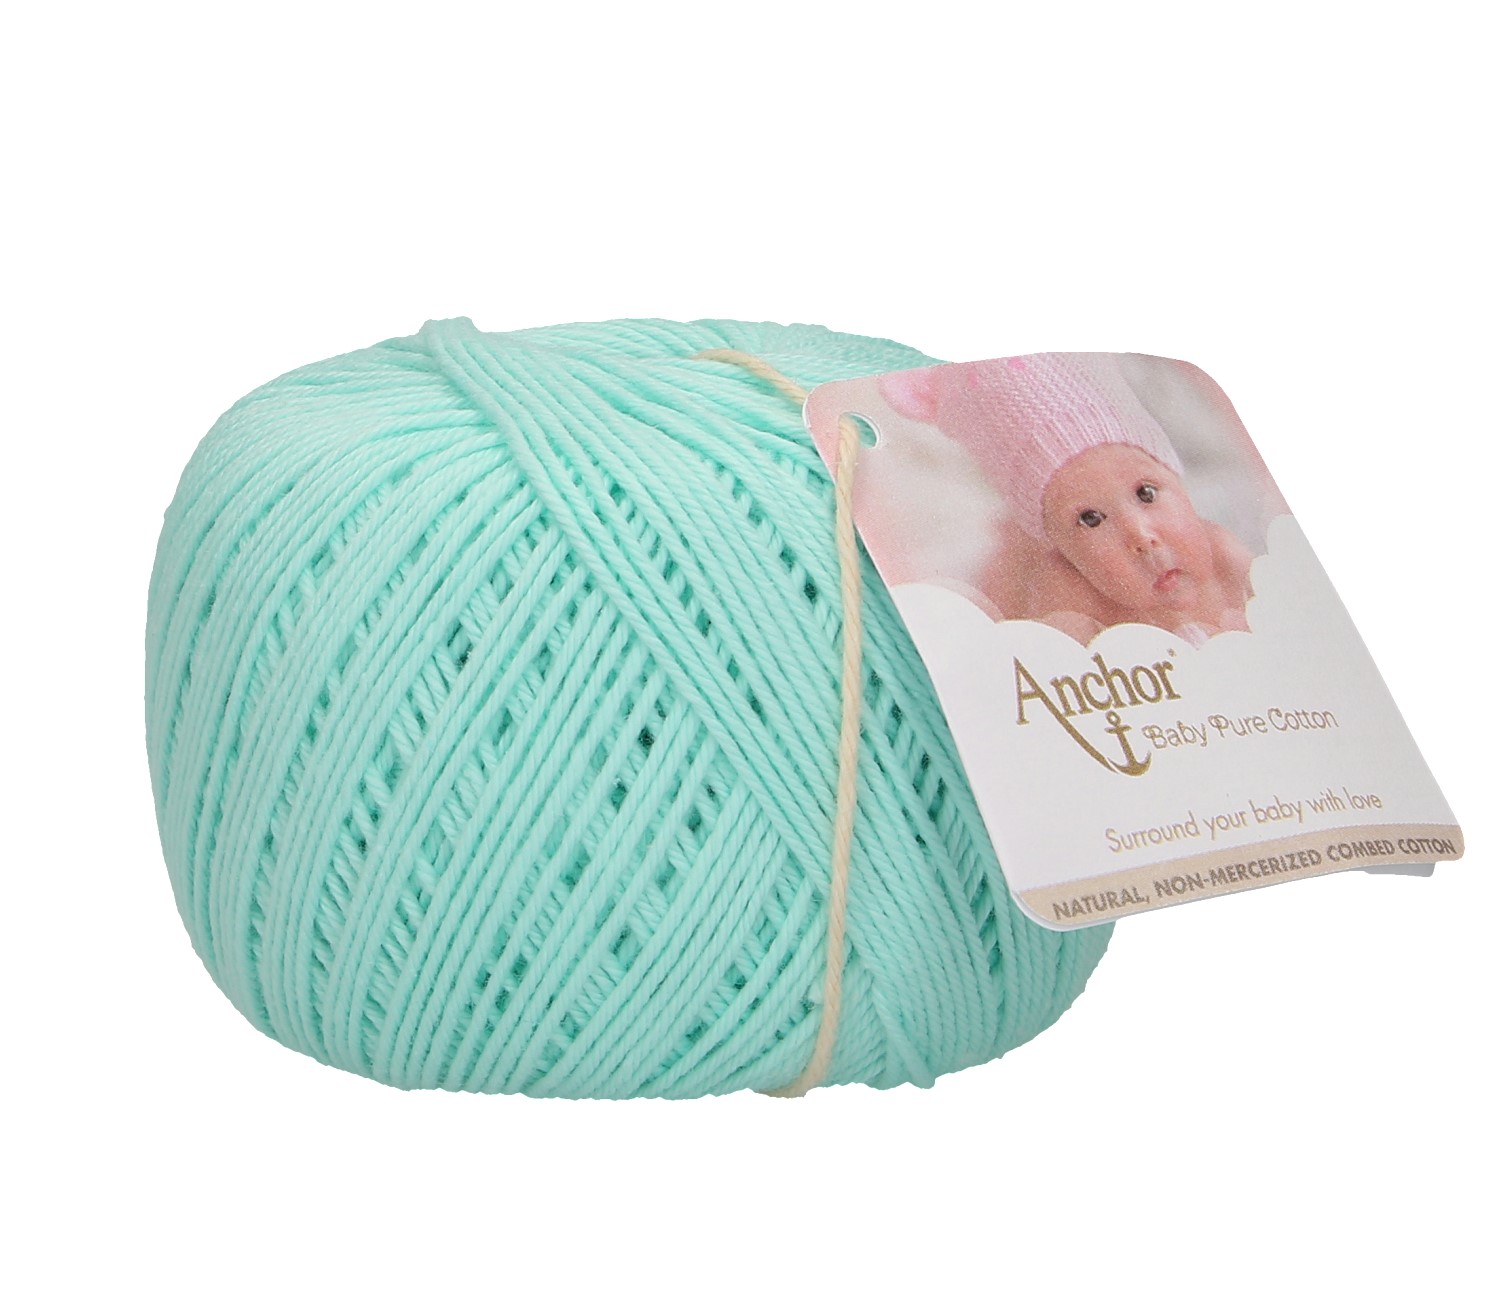 Anchor Baby Pure Cotton menta zöld 385